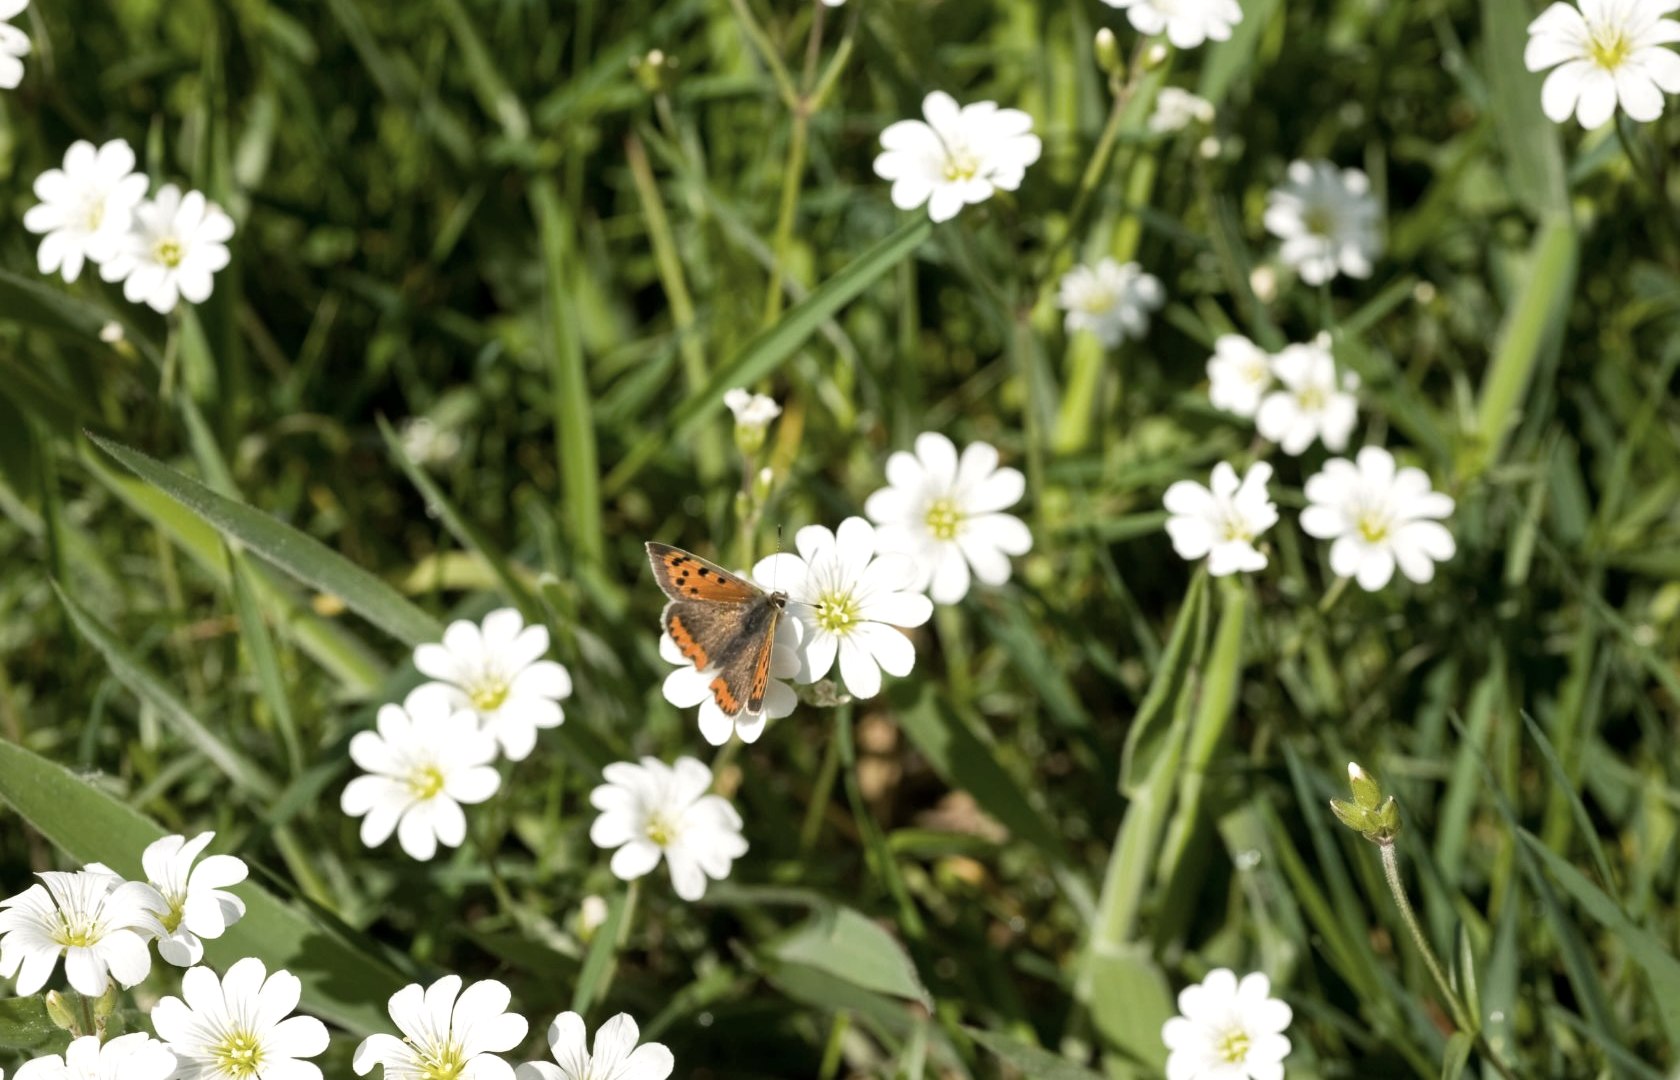 Schmetterling auf Wiese, © Rheinland-Pfalz Tourismus GmbH, D. Ketz